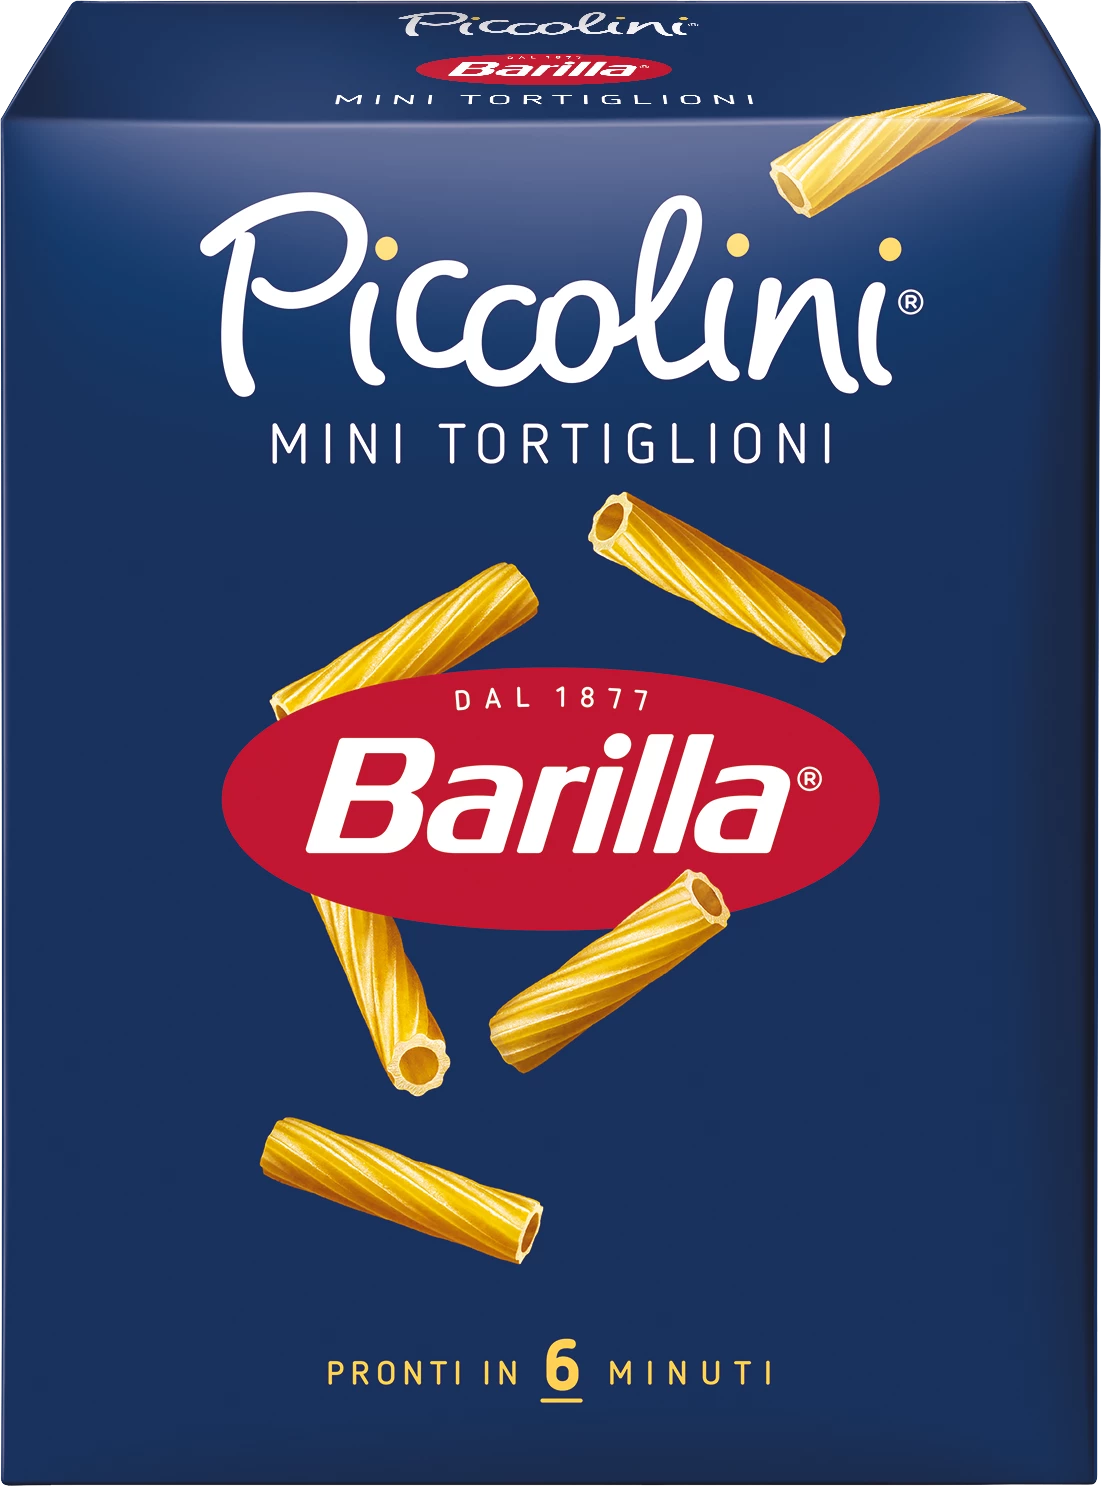 Minitortiglioni-pasta, 500 g - BARRILa